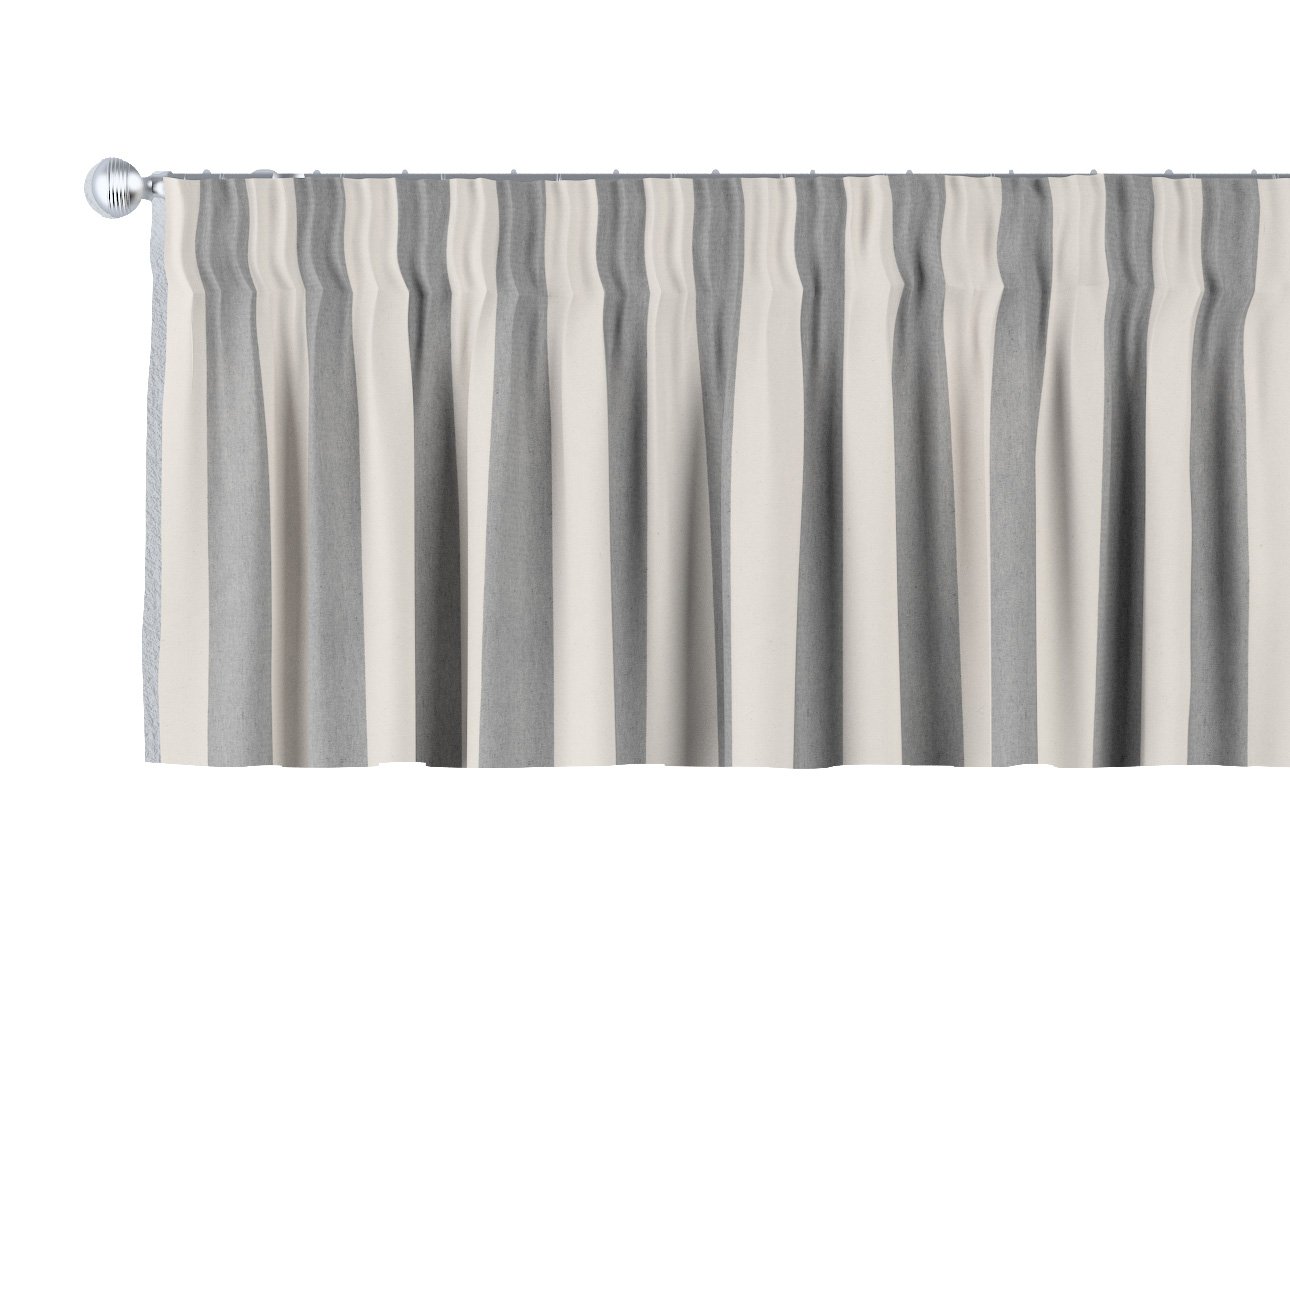 Dekoria Krátky záves na riasiacej páske, biało-szare pionowe pasy, 390 x 40 cm, Quadro, 143-91